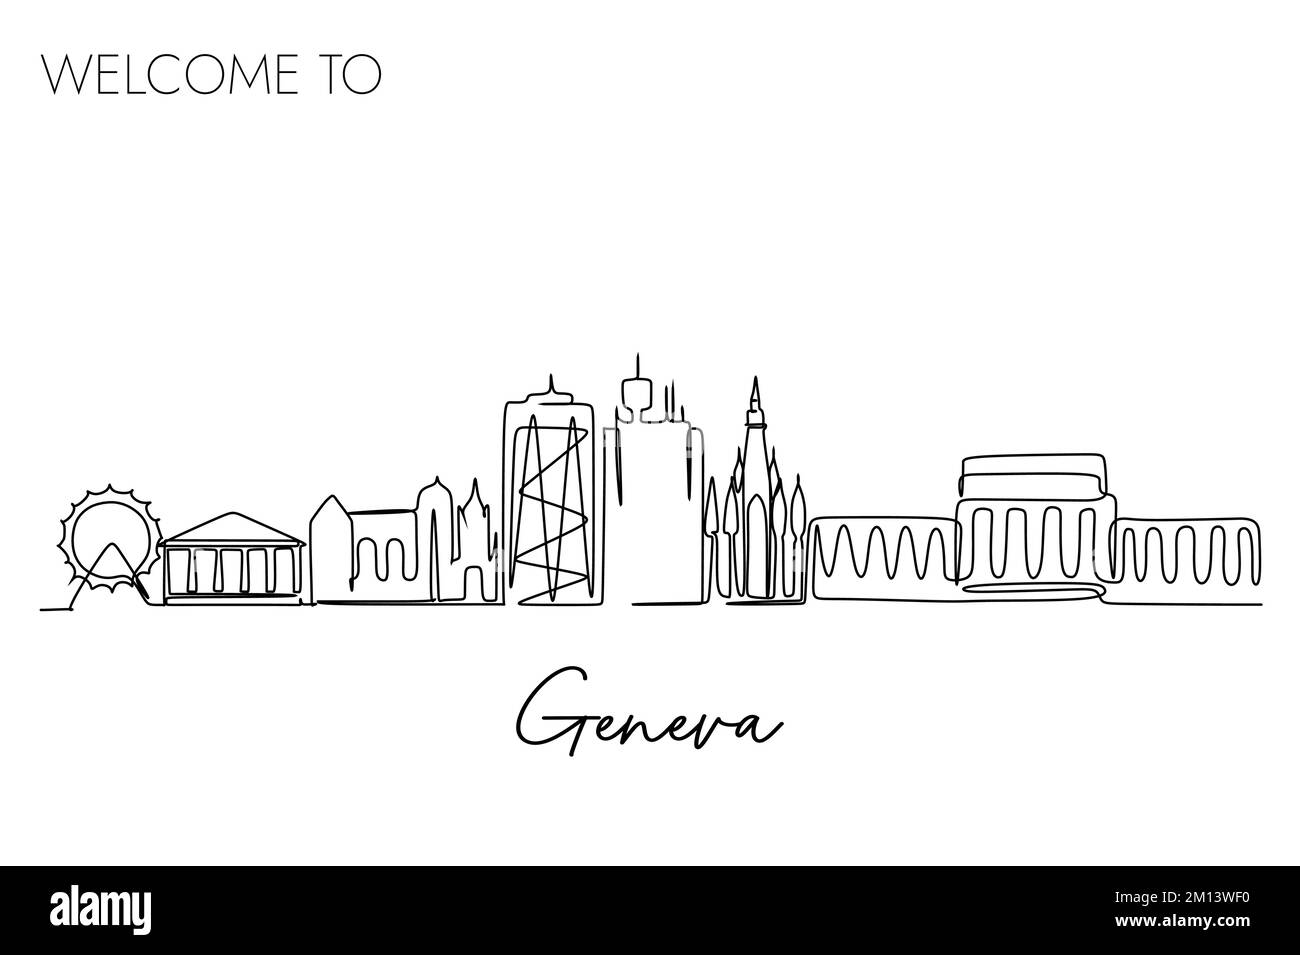 Eine durchgehende Linienzeichnung der Skyline der Stadt Genf, Schweiz. Weltberühmtes Reiseziel. Einfaches handgezeichnetes Design für Reisen und Touristen Stock Vektor